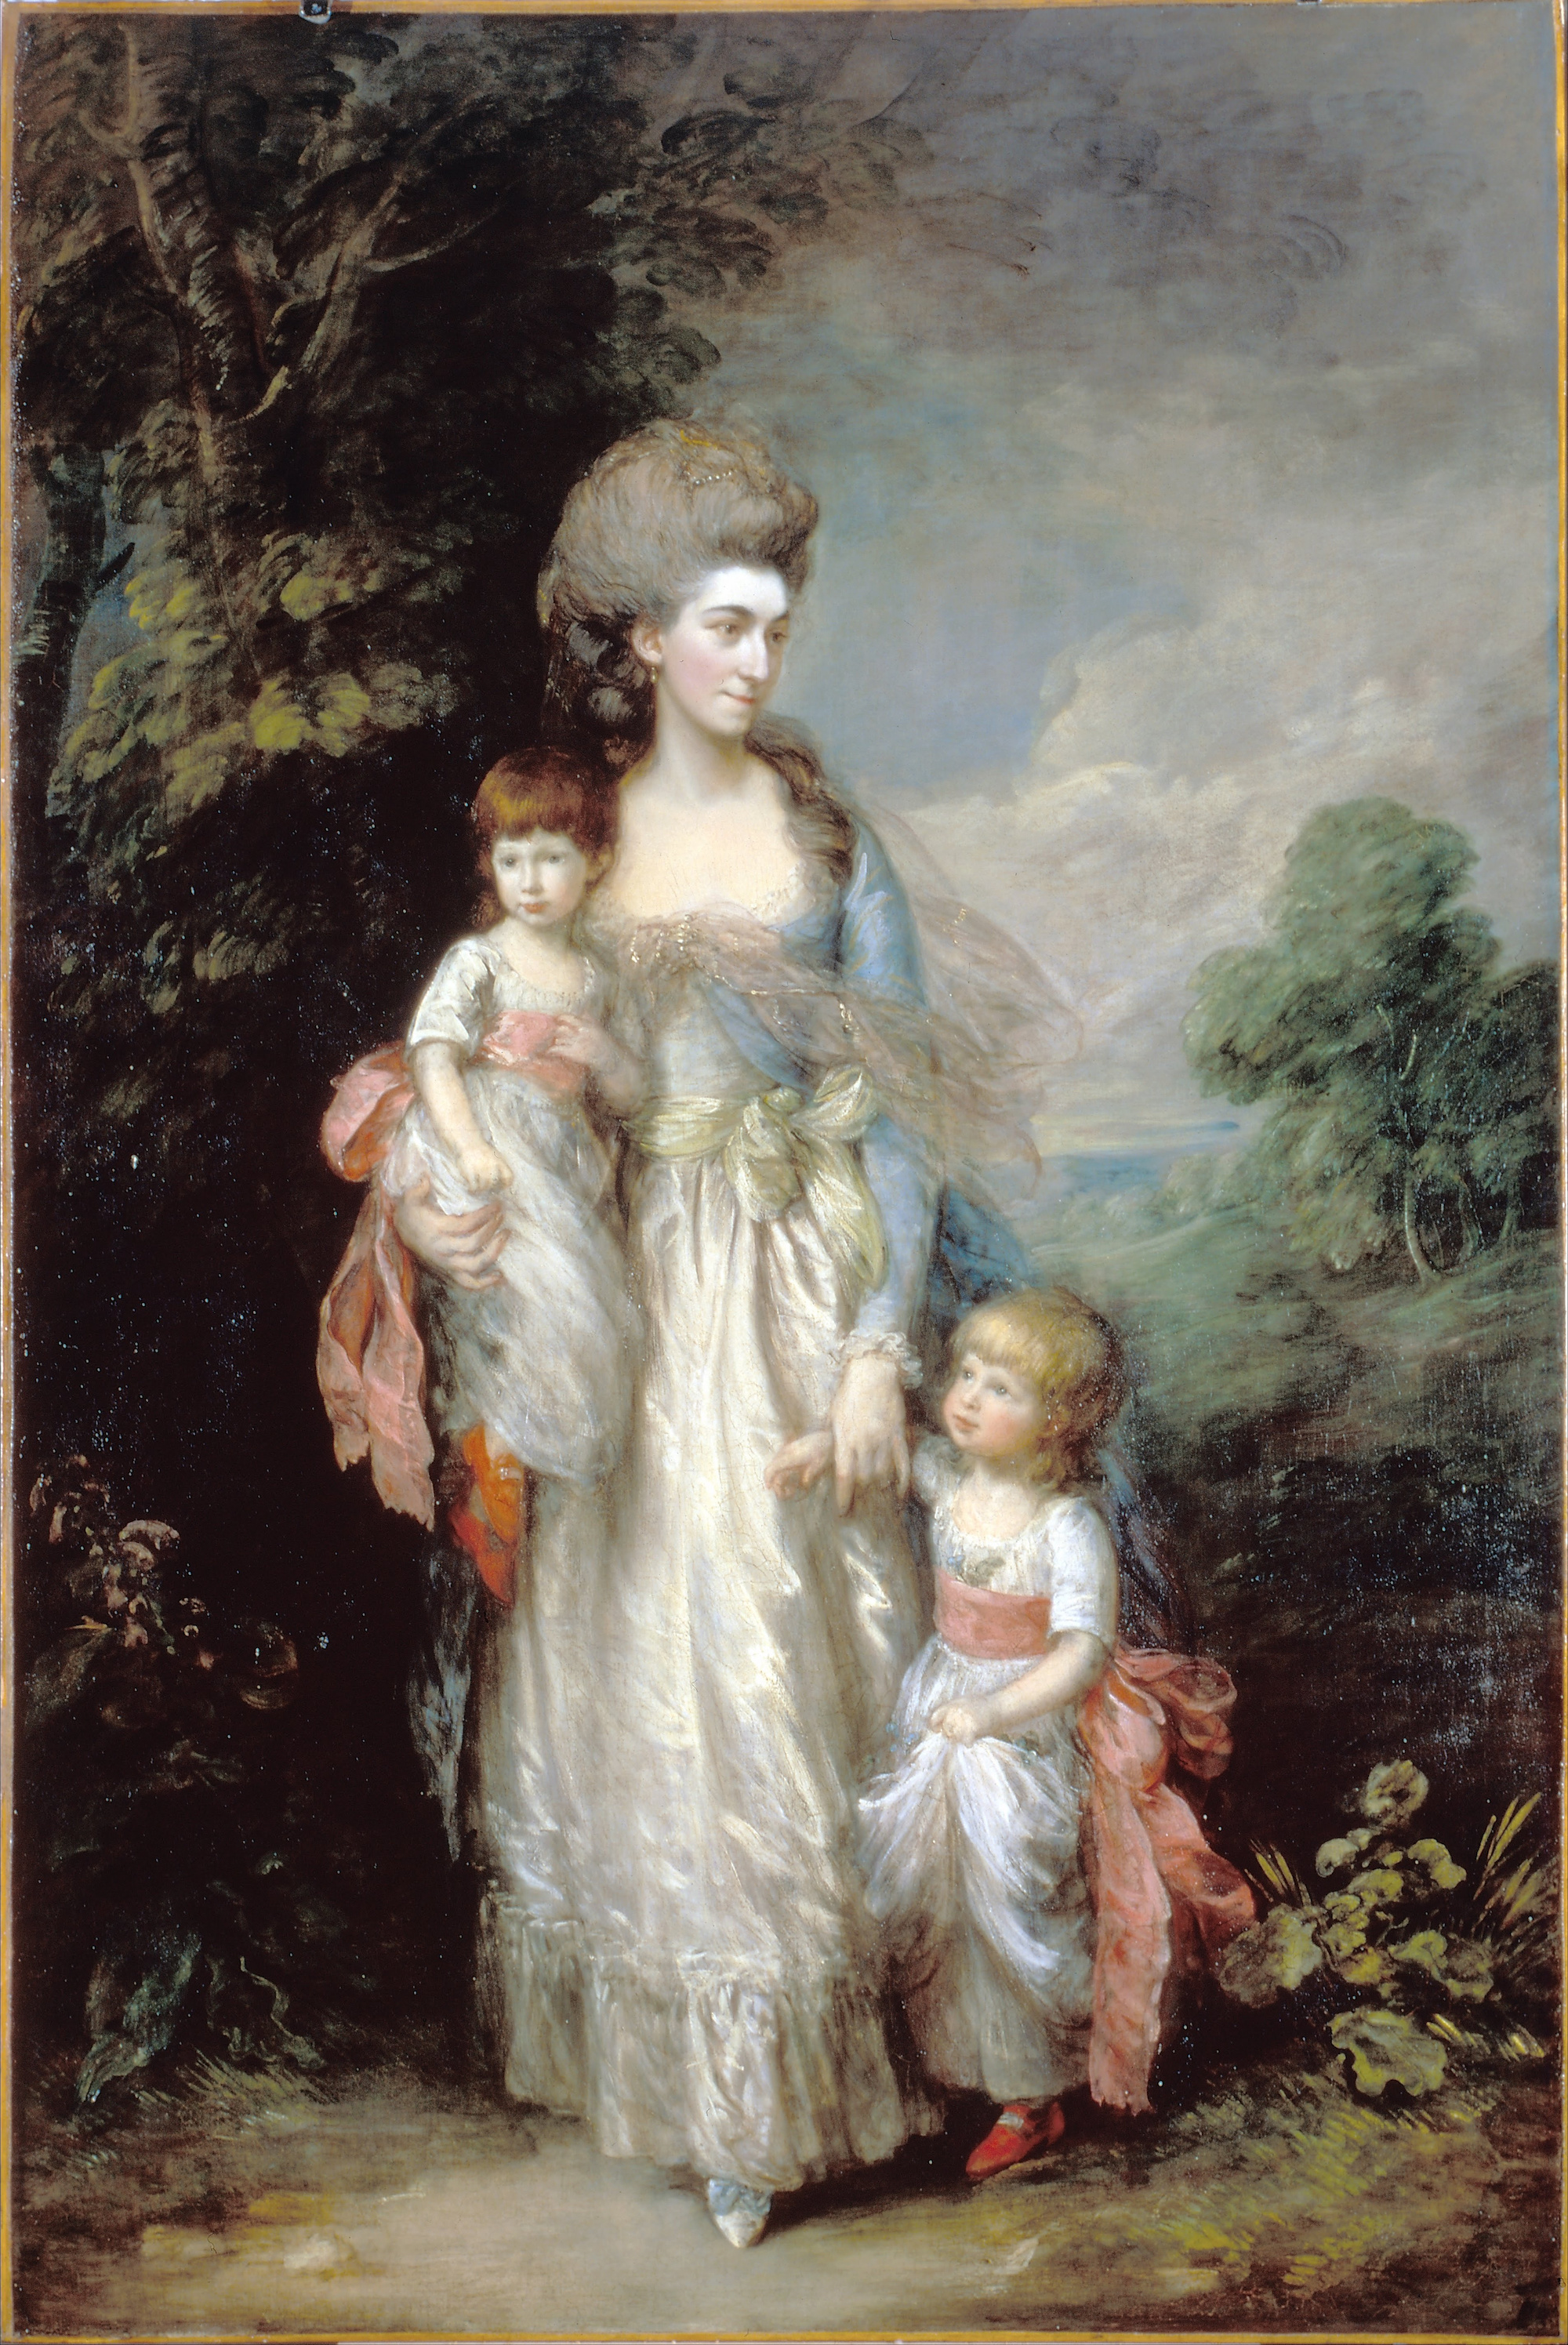 السيدة اليزابيث مودي مع ابنيها صموئيل وتوماس by Thomas Gainsborough - 154.2 x 234 cm - c.1779-85 